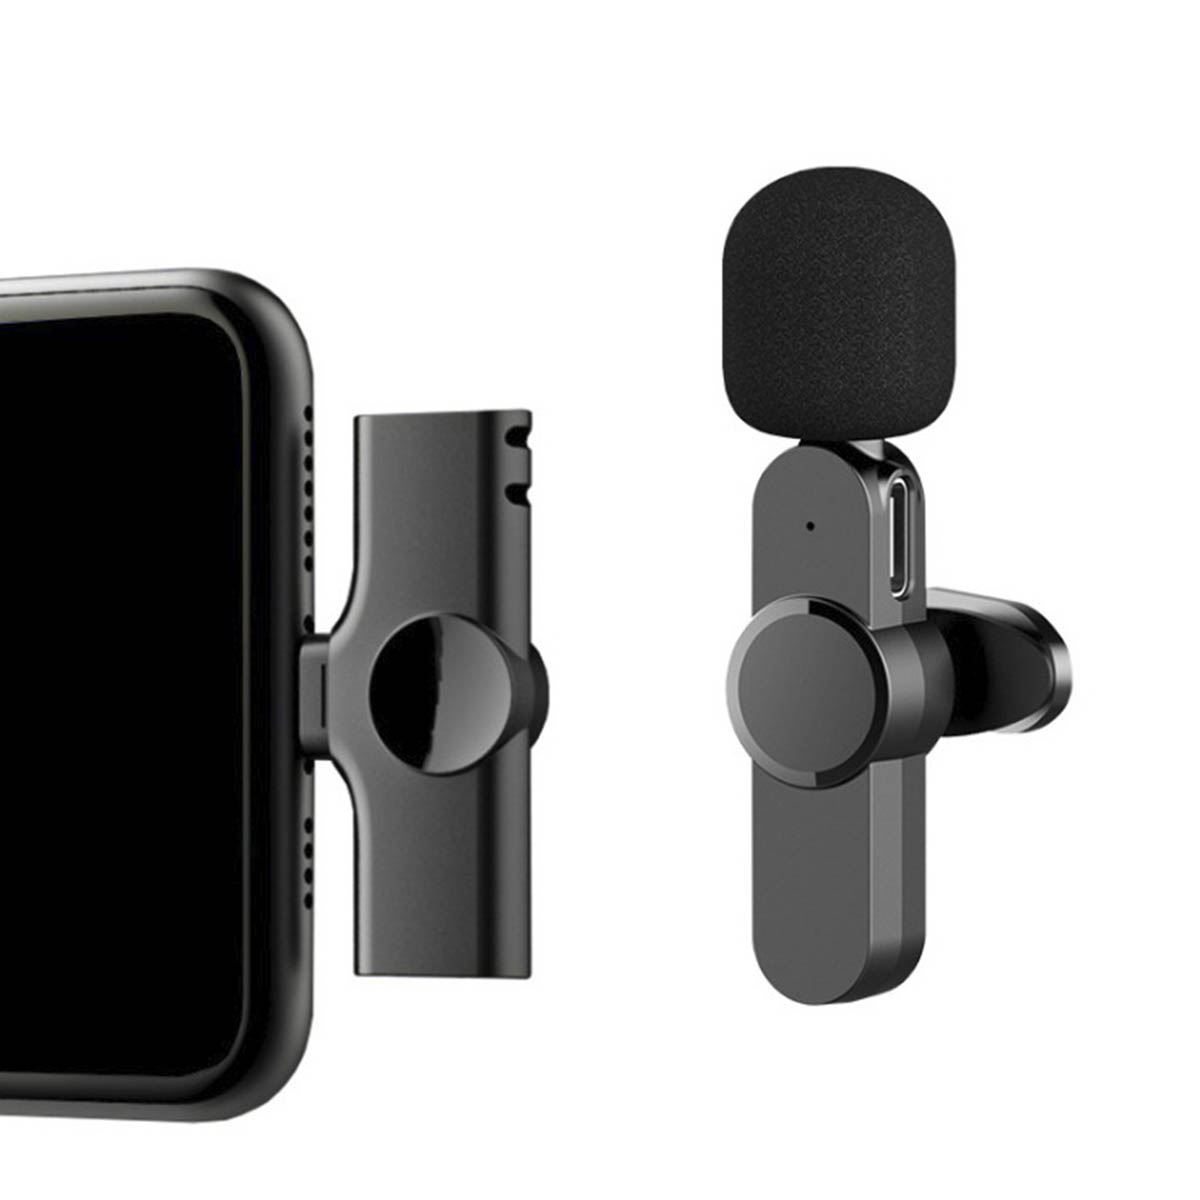 Беспроводной петличный микрофон для телефона, приемник с выходом Lightning 8 pin, цвет черный